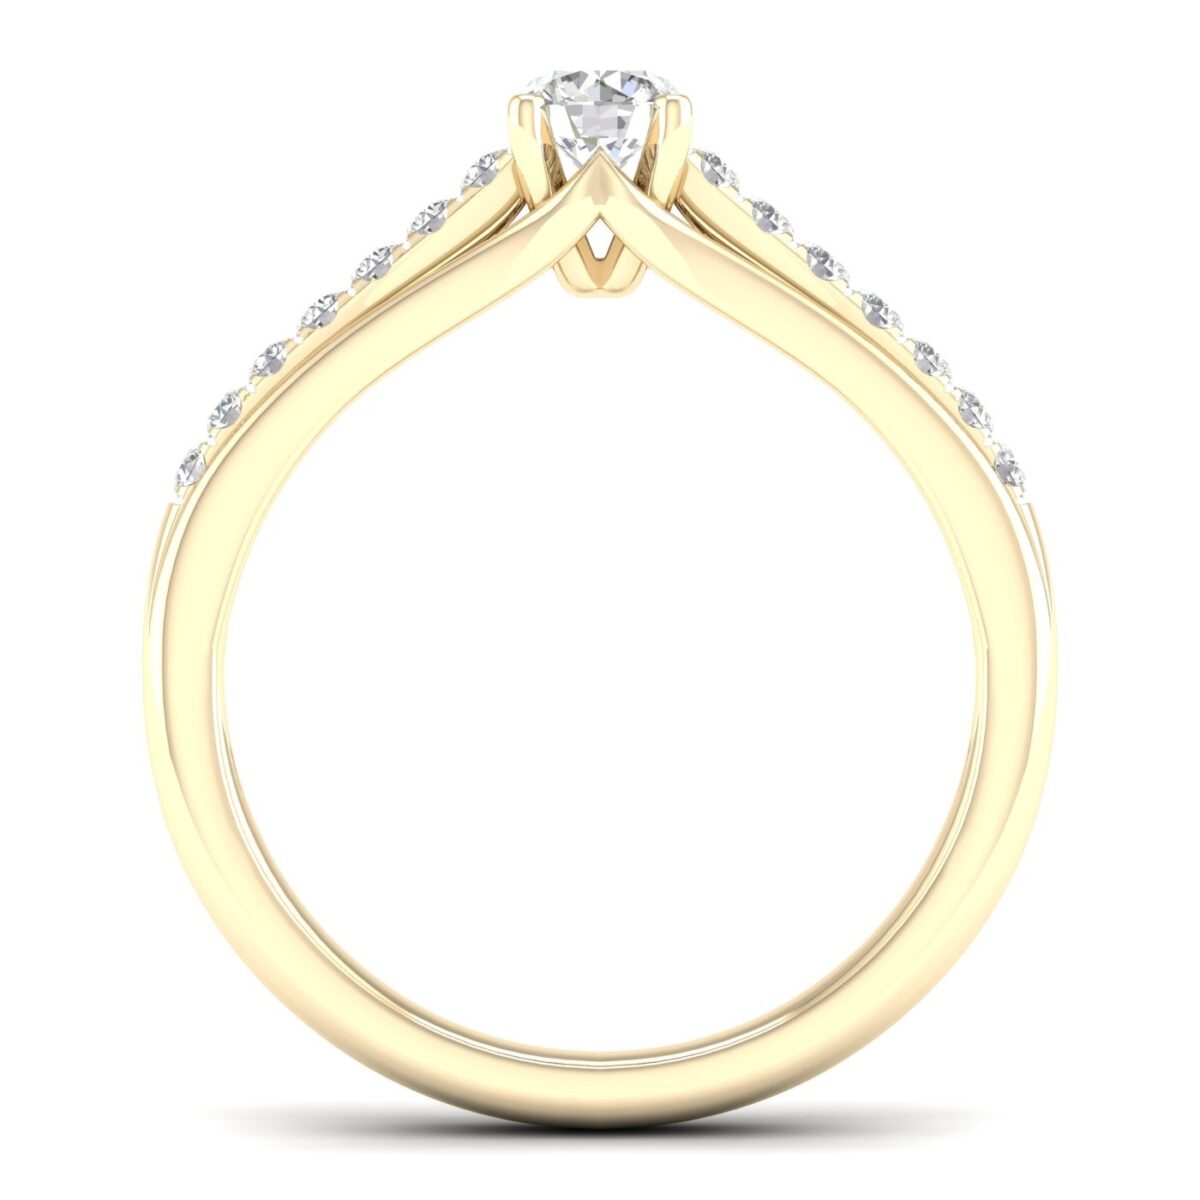 Kullast sõrmus teemantidega 0,50 ct. Kood: 69hc